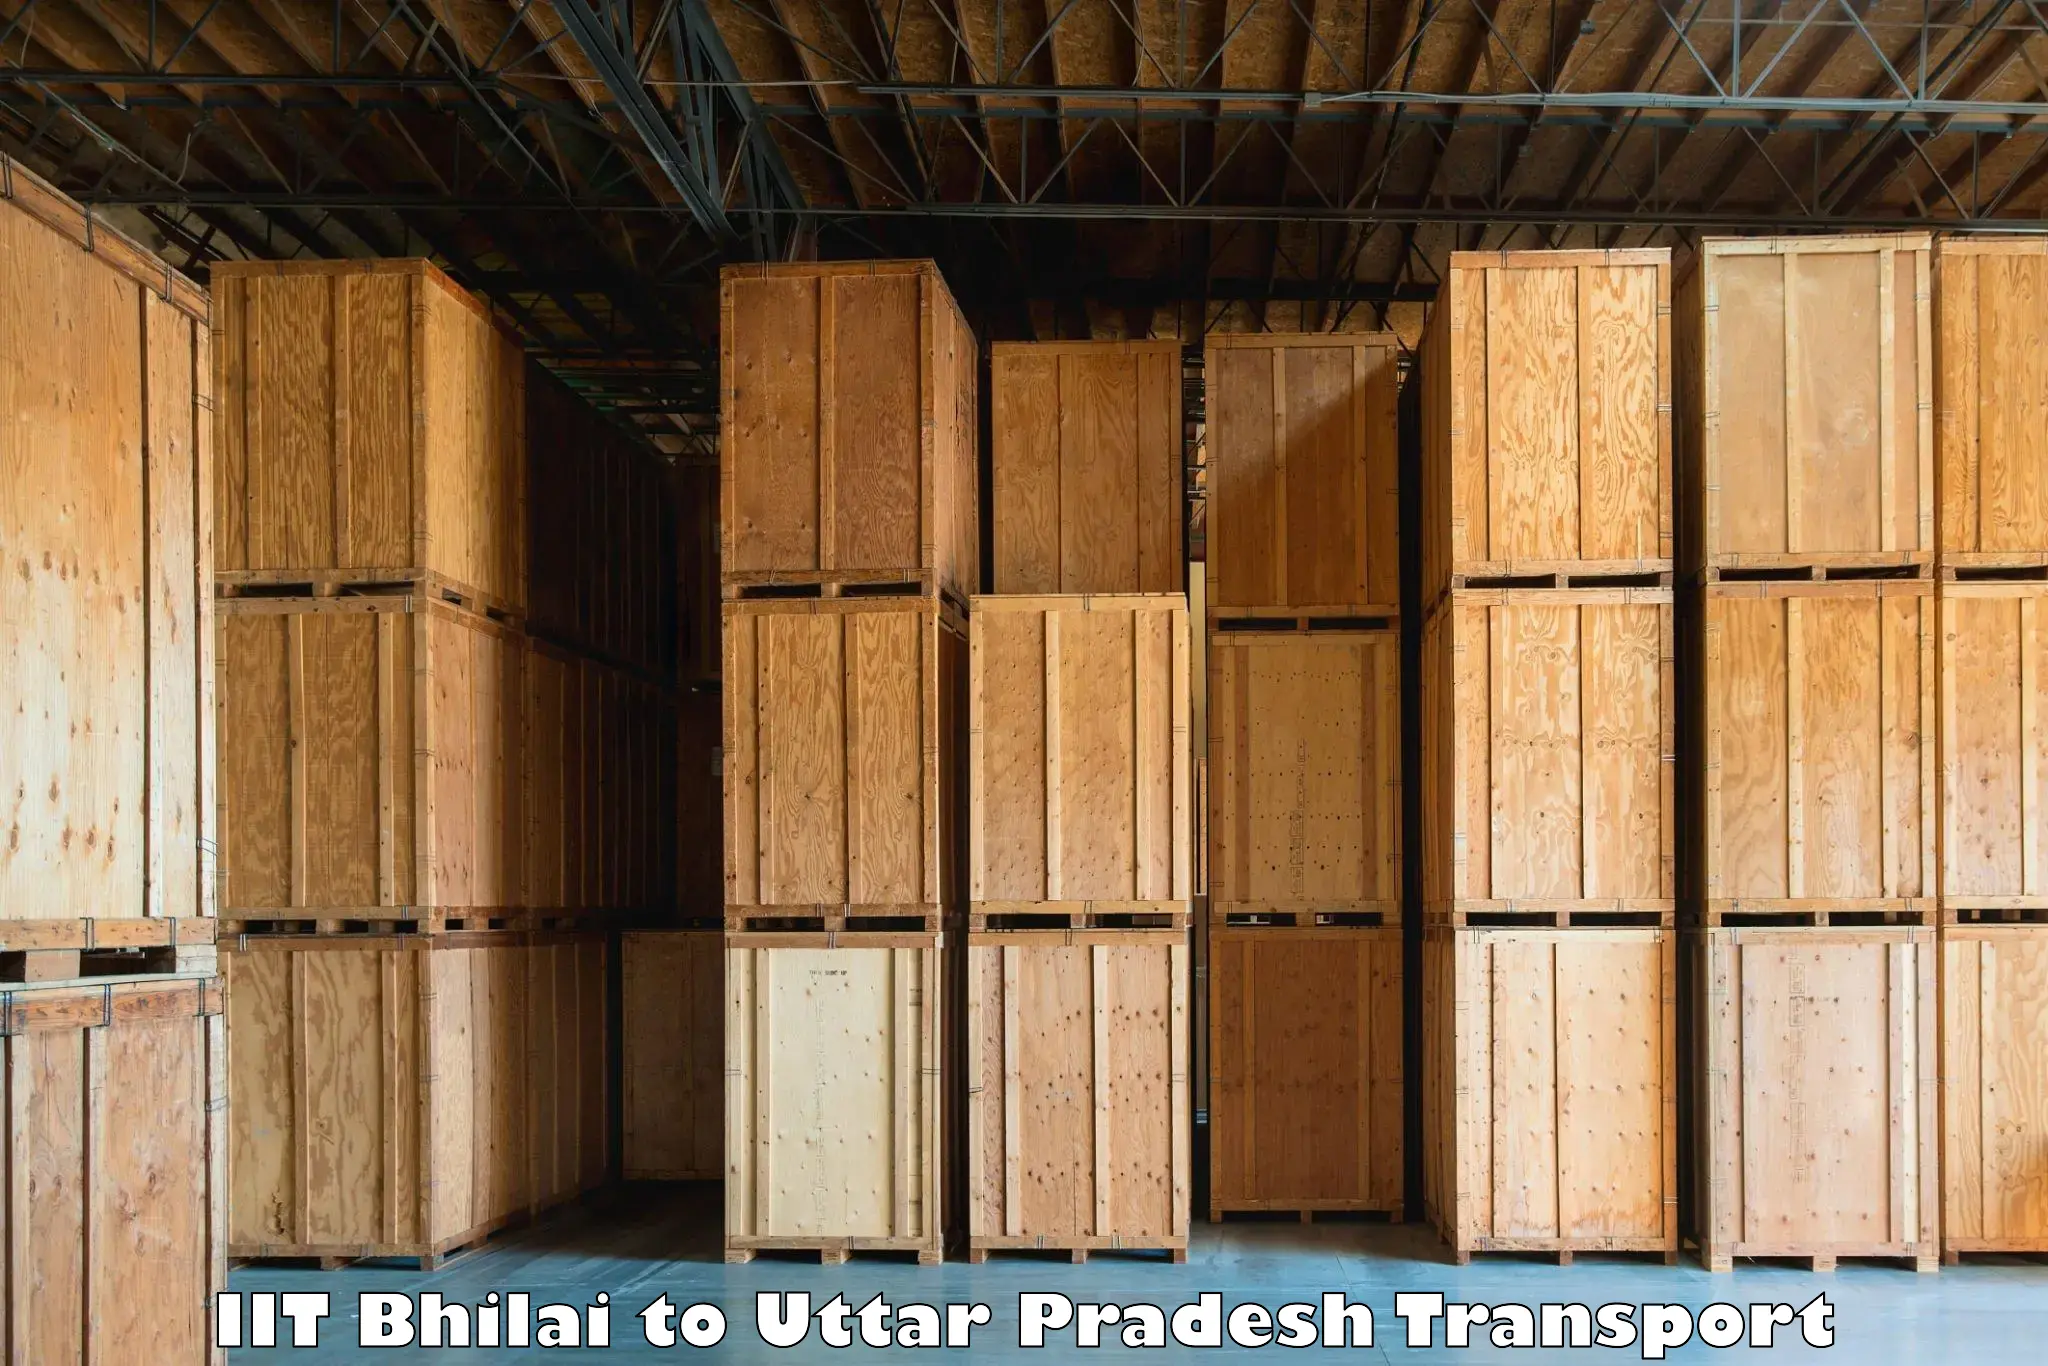 Air freight transport services IIT Bhilai to Gauri Bazar